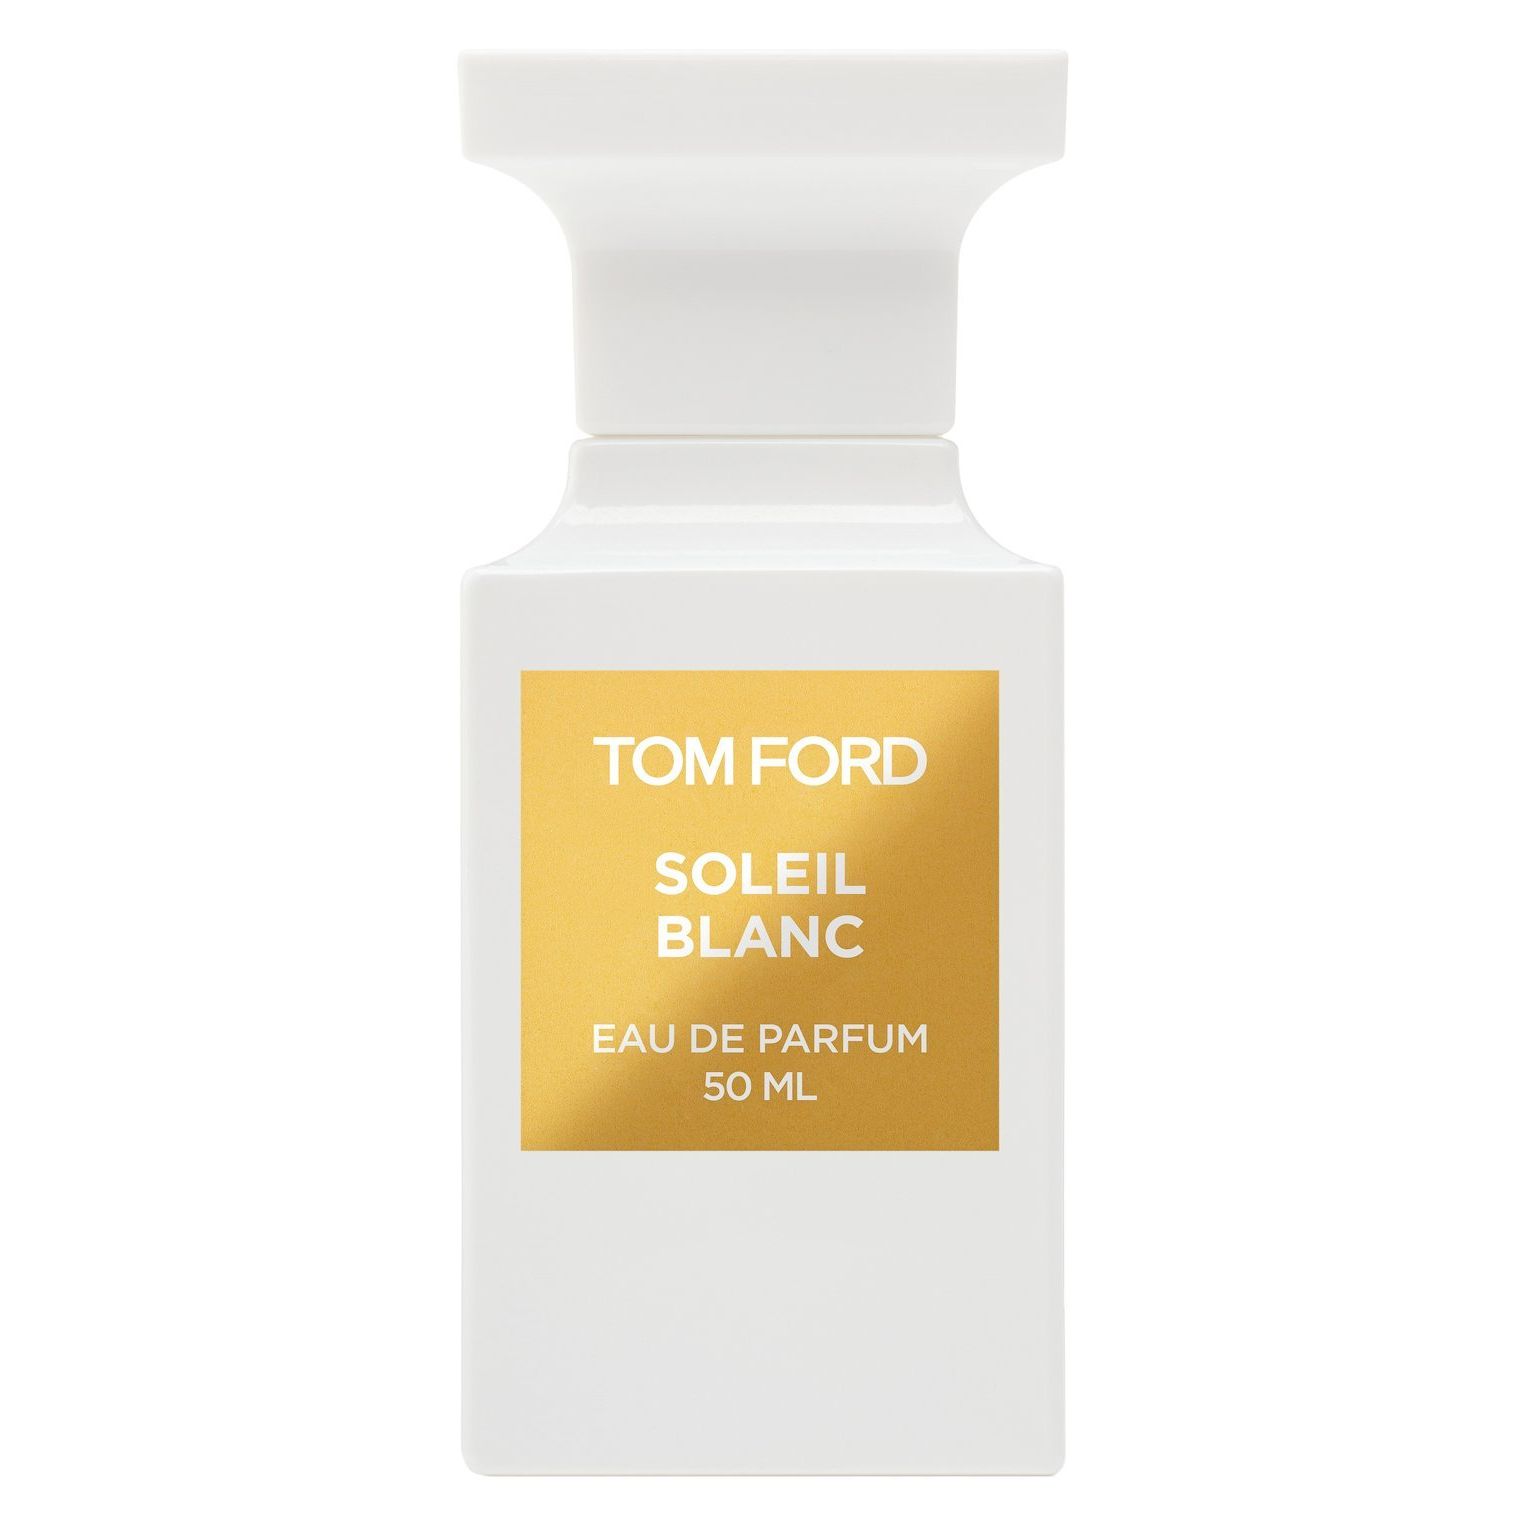 Вода парфюмерная Tom Ford Soleil Blanc, унисекс, 50 мл lalique soleil 100